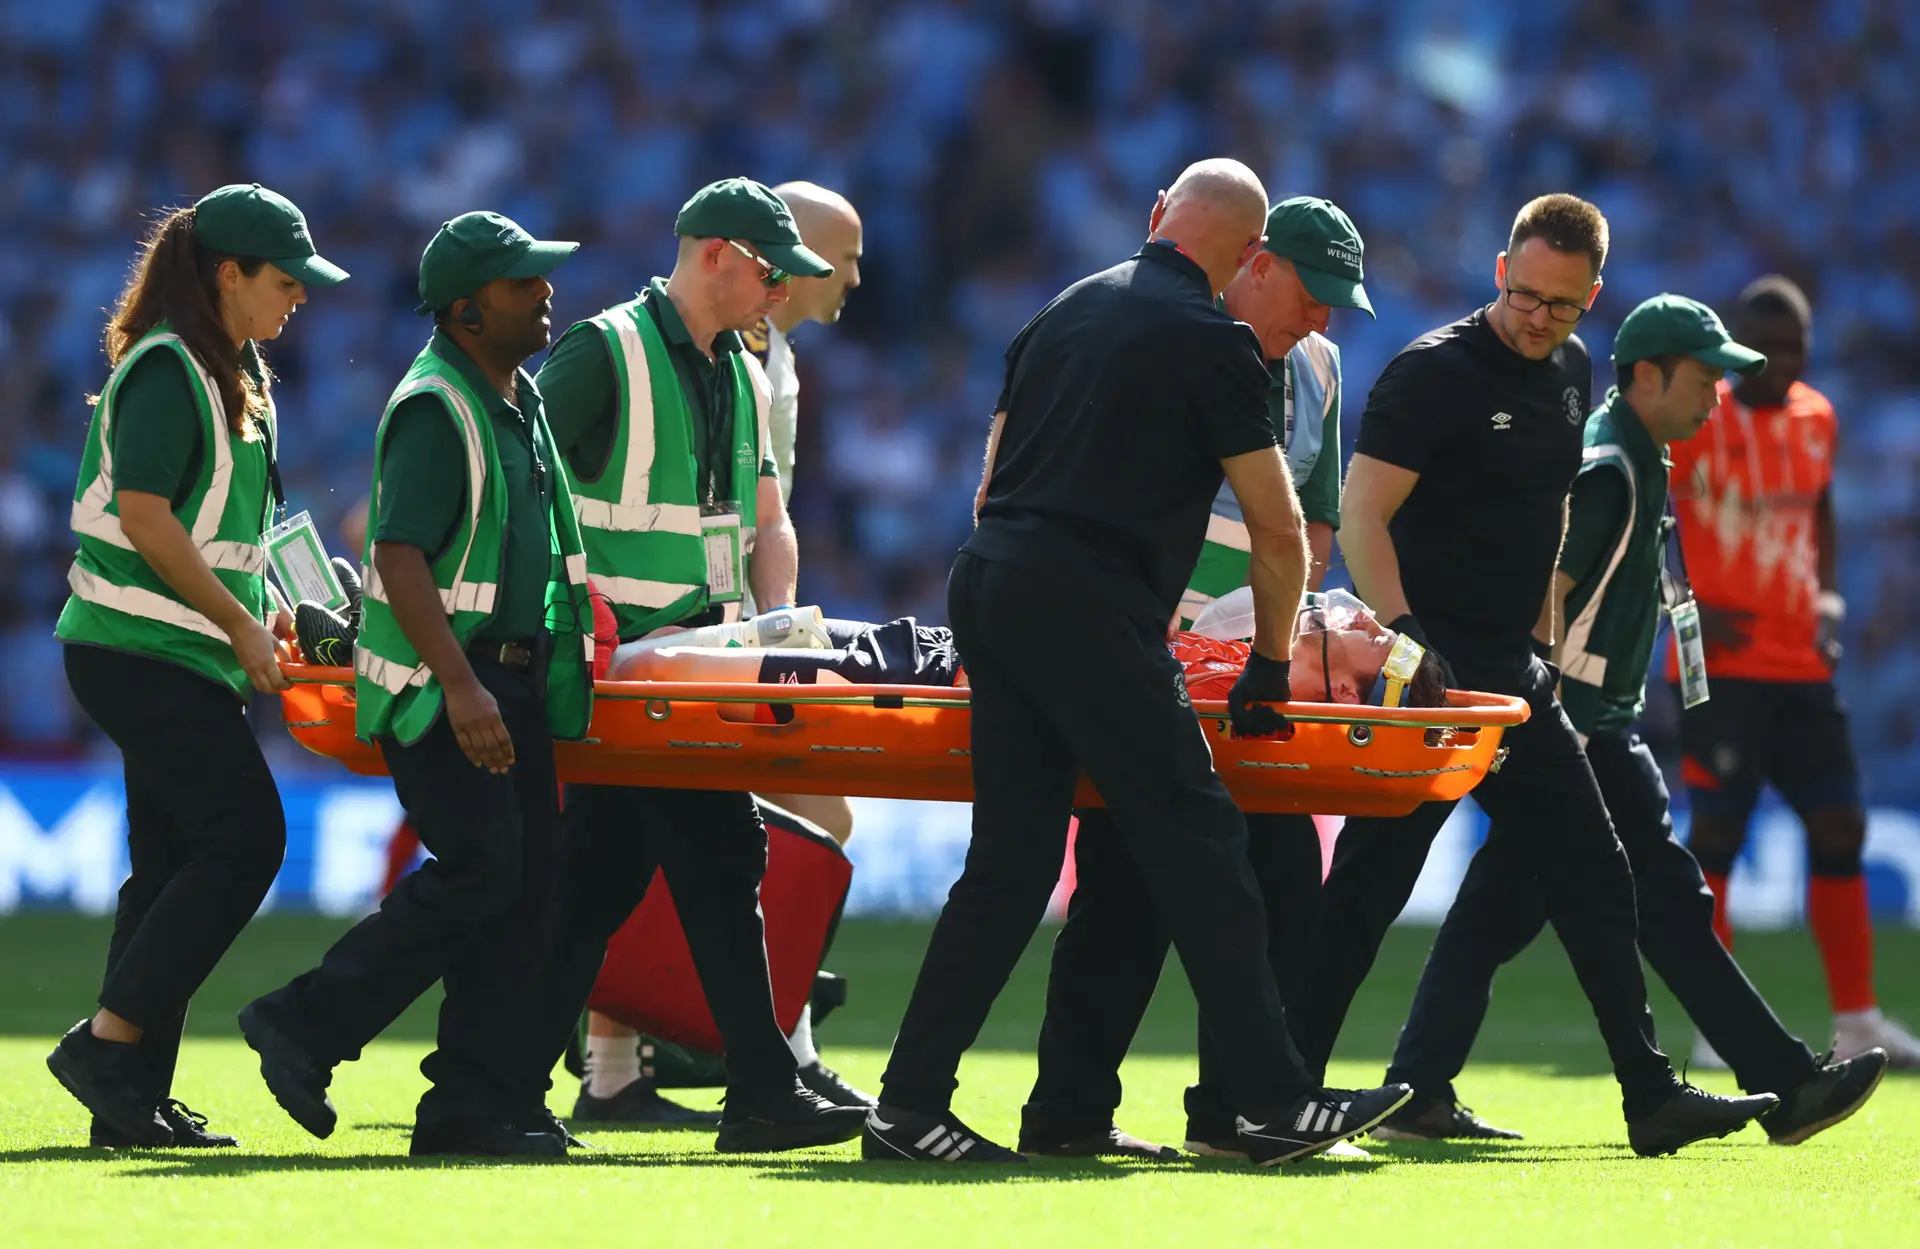 Pânico na Premier League: Capitão do Luton Town colapsa em campo e jogo é  suspenso - Inglaterra - Jornal Record